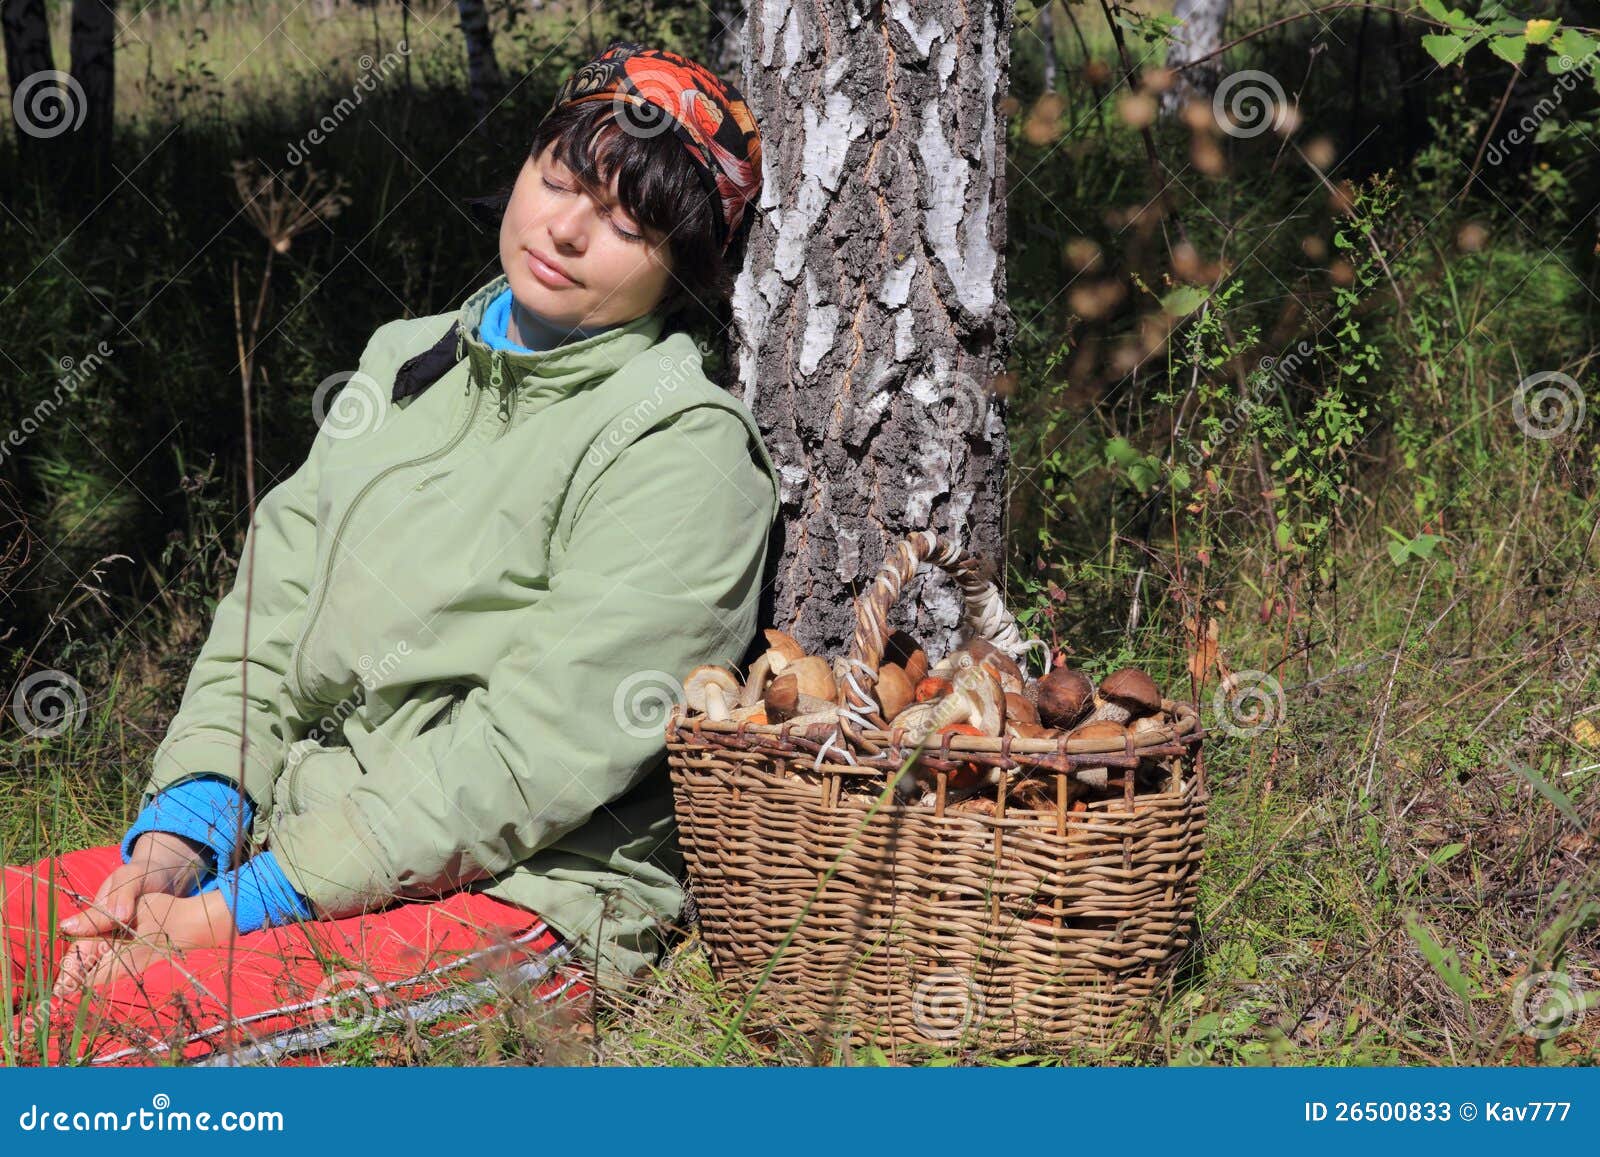 Сон собирать белые грибы в лесу женщине. Женщина собирает грибы. Женщина грибник. Женщина собирает грибы в лесу. Девушка собирает грибы в лесу.